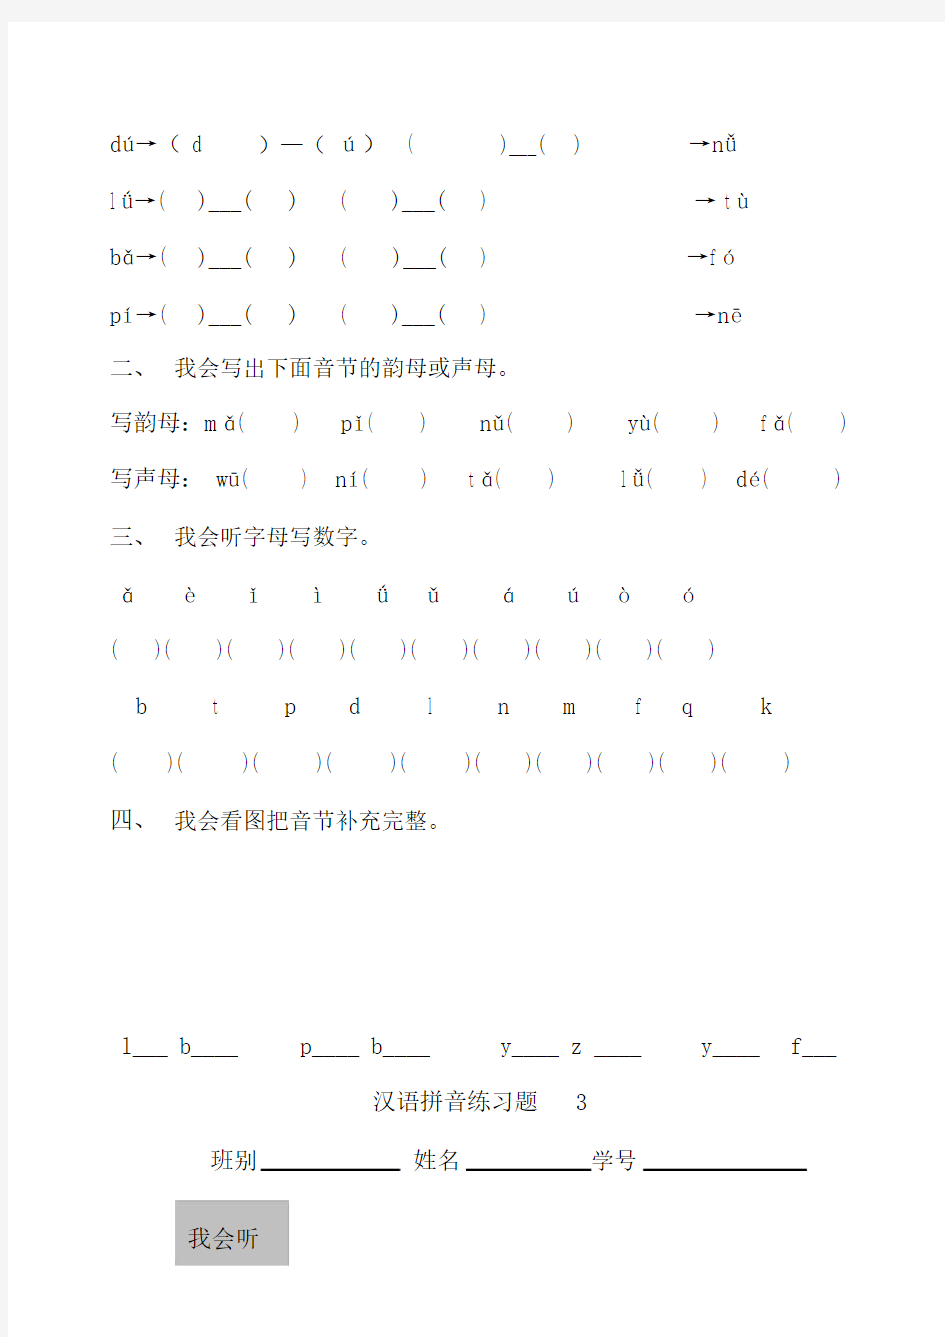 (完整版)汉语拼音练习题-学前班.docx